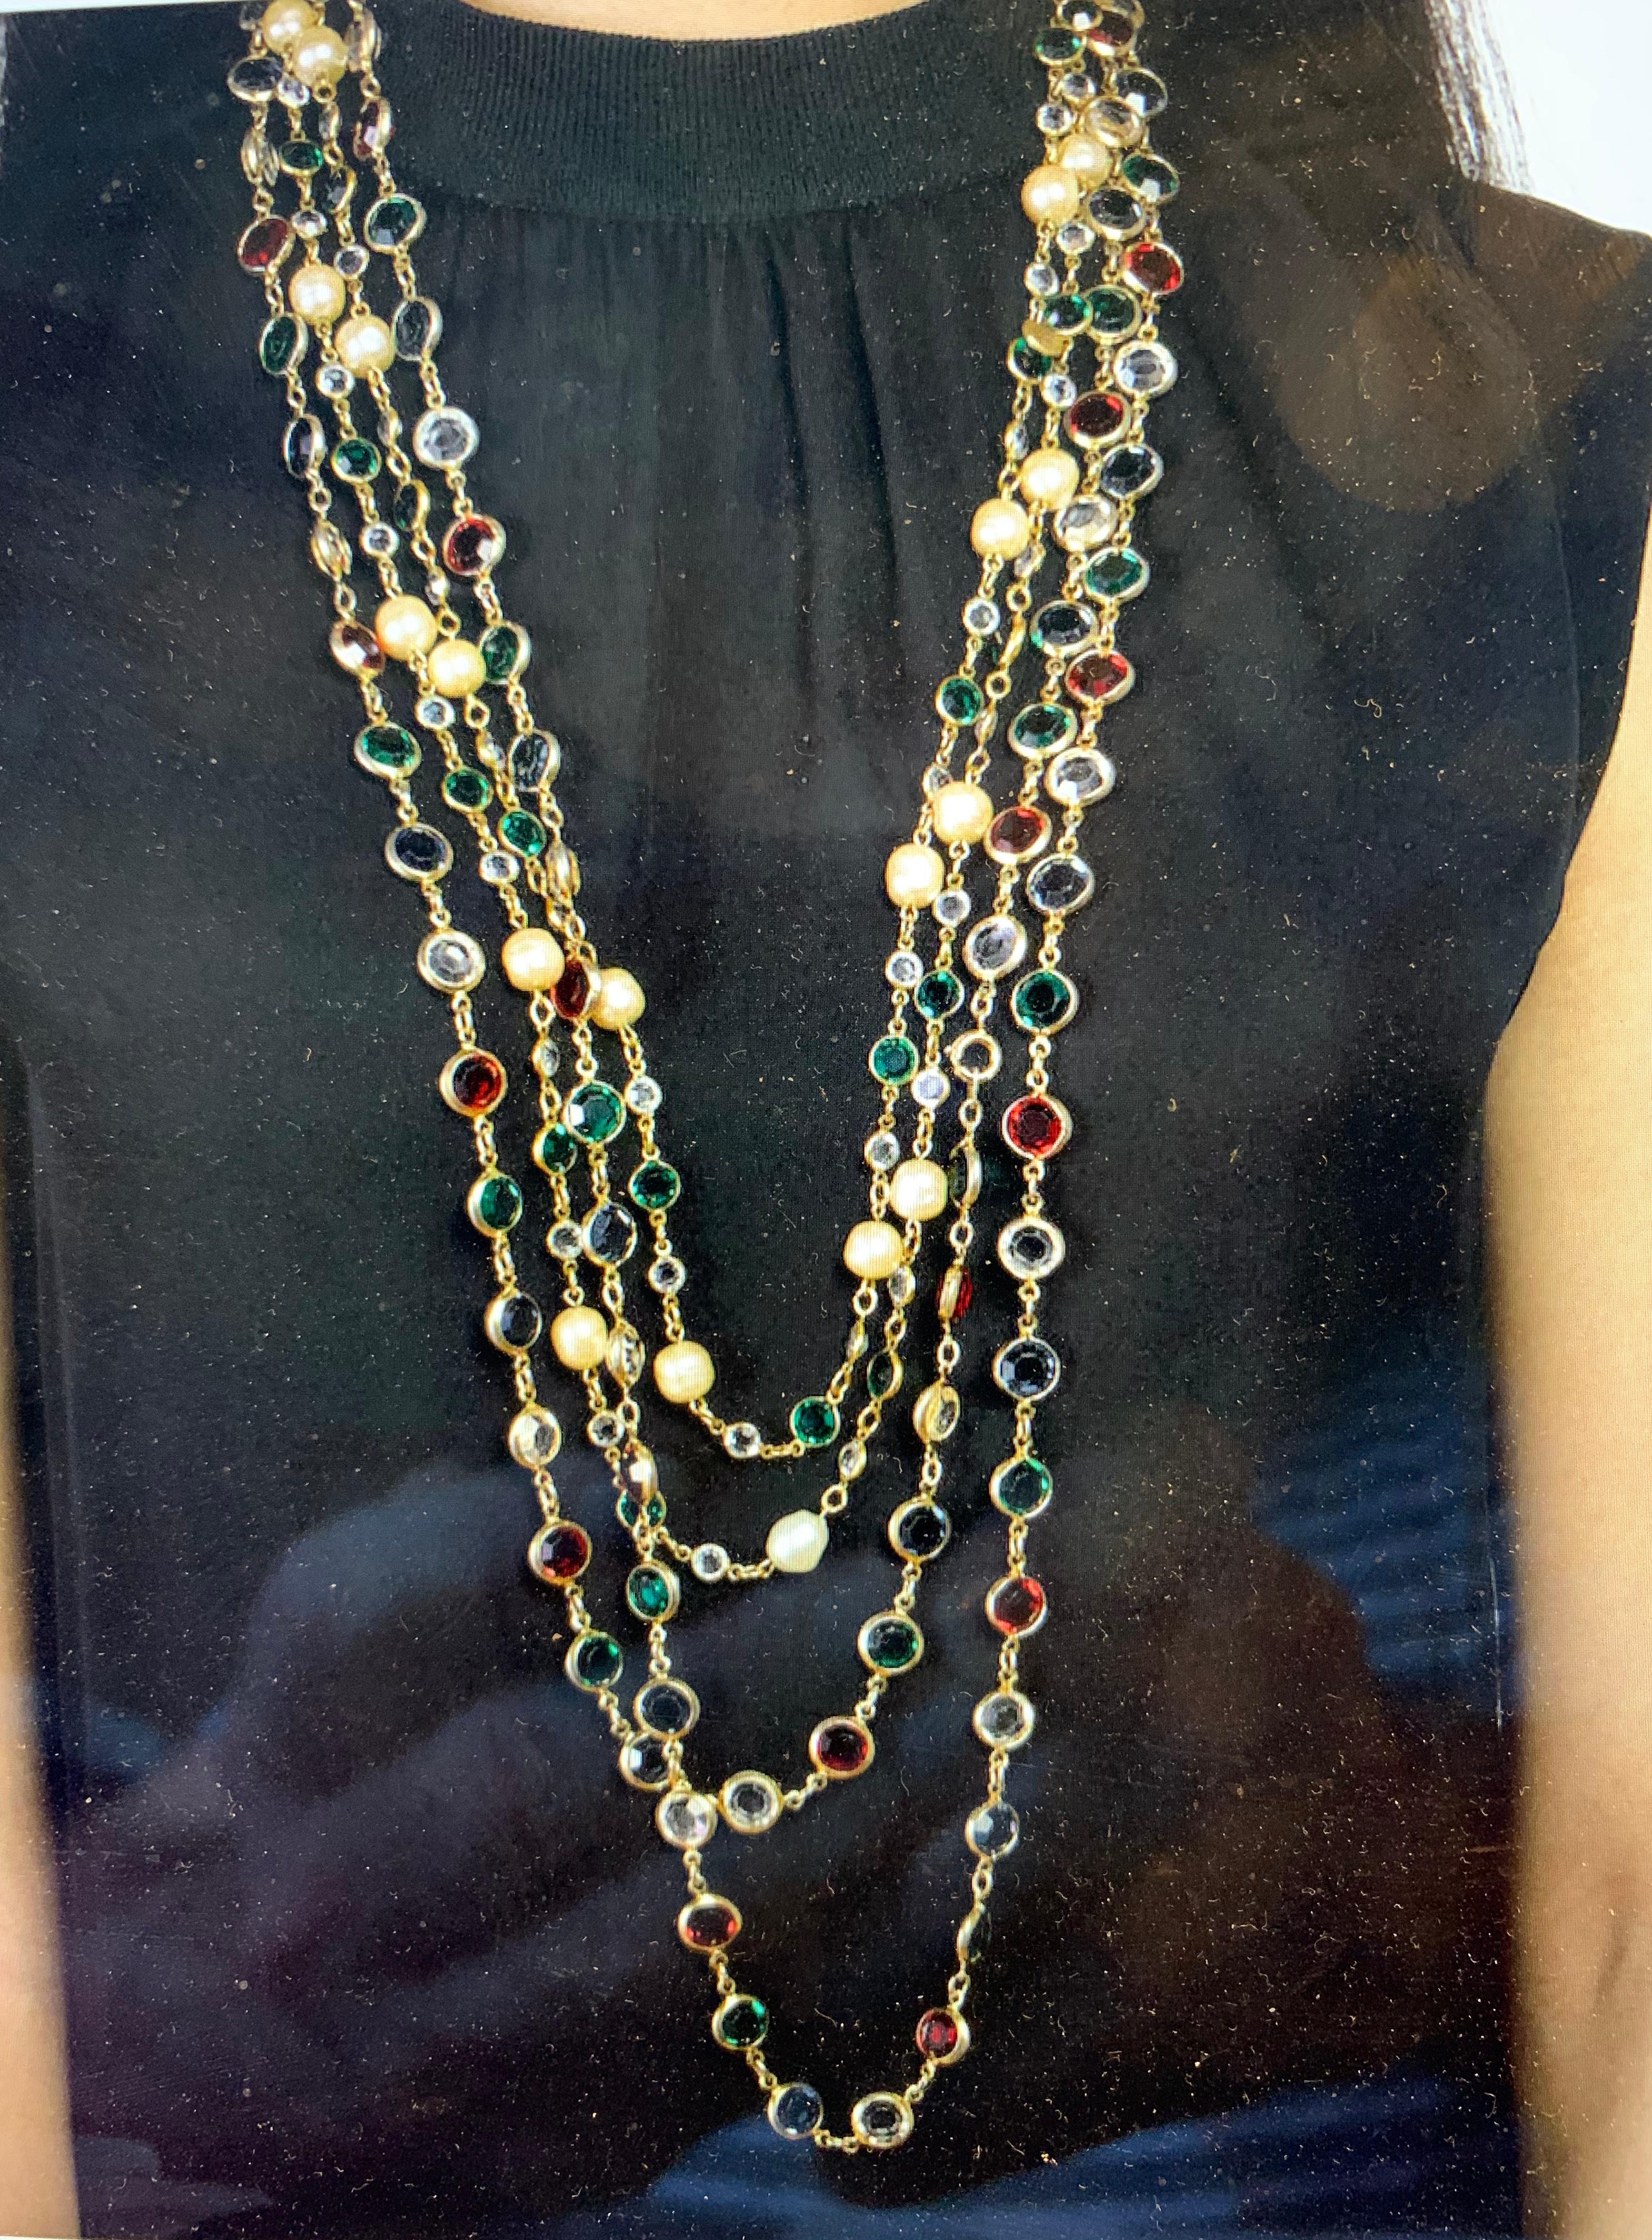 De la collection de l'écrivain Barbara Taylor Bradford OBE (Ordre de l'Empire britannique) proviennent ces deux extraordinaires et très rares colliers Chanel assortis en verre Gripoix et fausses perles, signés Chanel et datés de 1981, avec leur